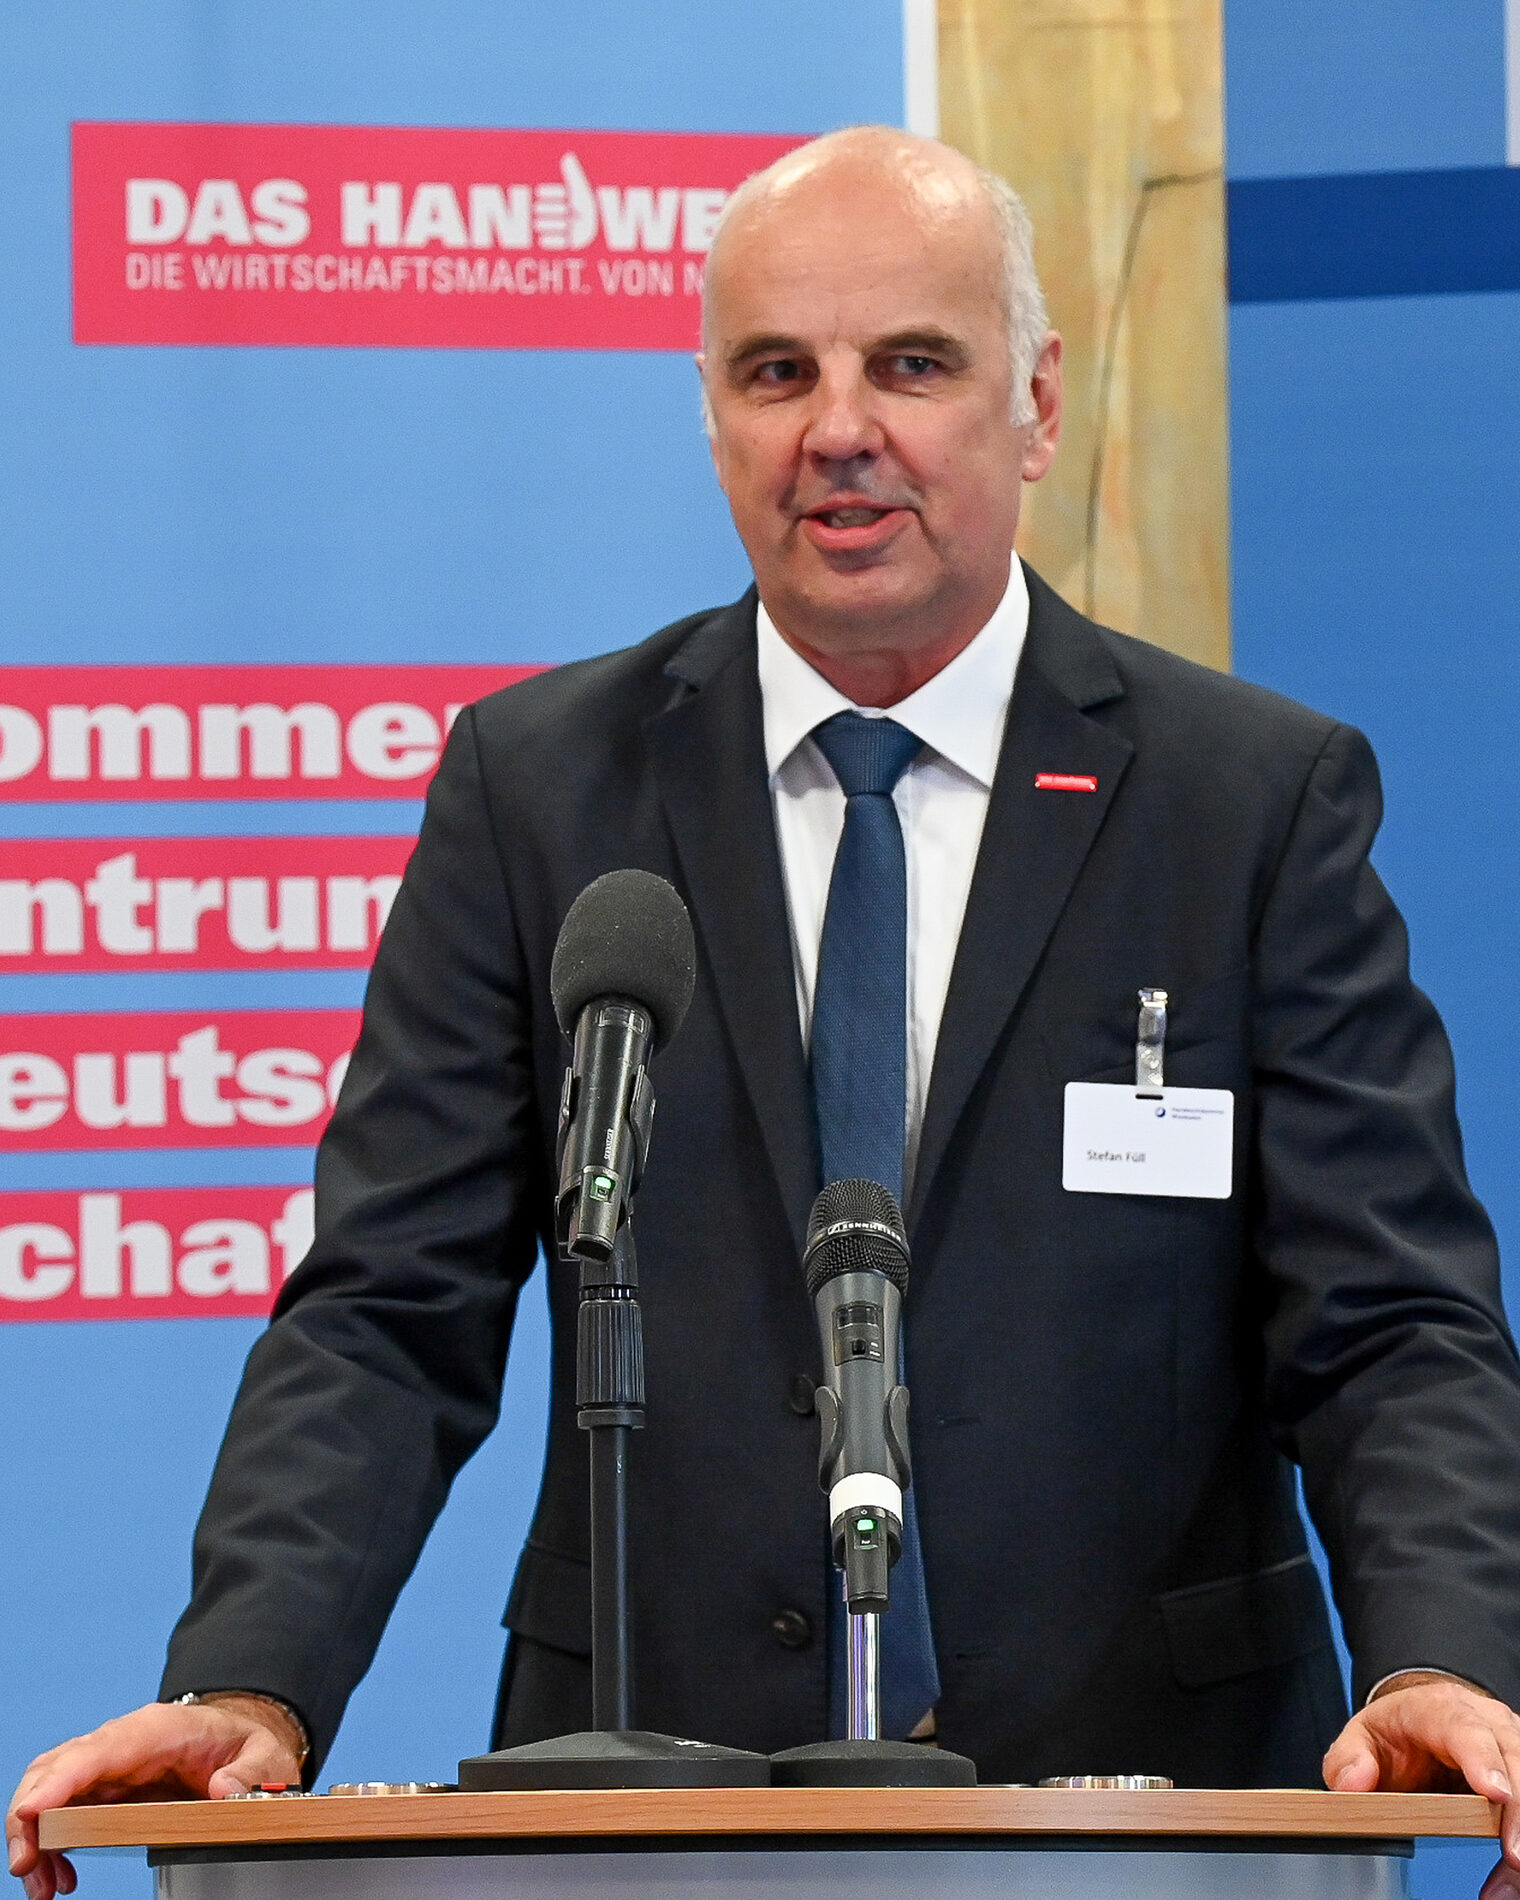 Herr Stefan Füll bei seiner Rede auf dem Jahresempfang der Handwerkskammer Wiesbaden.